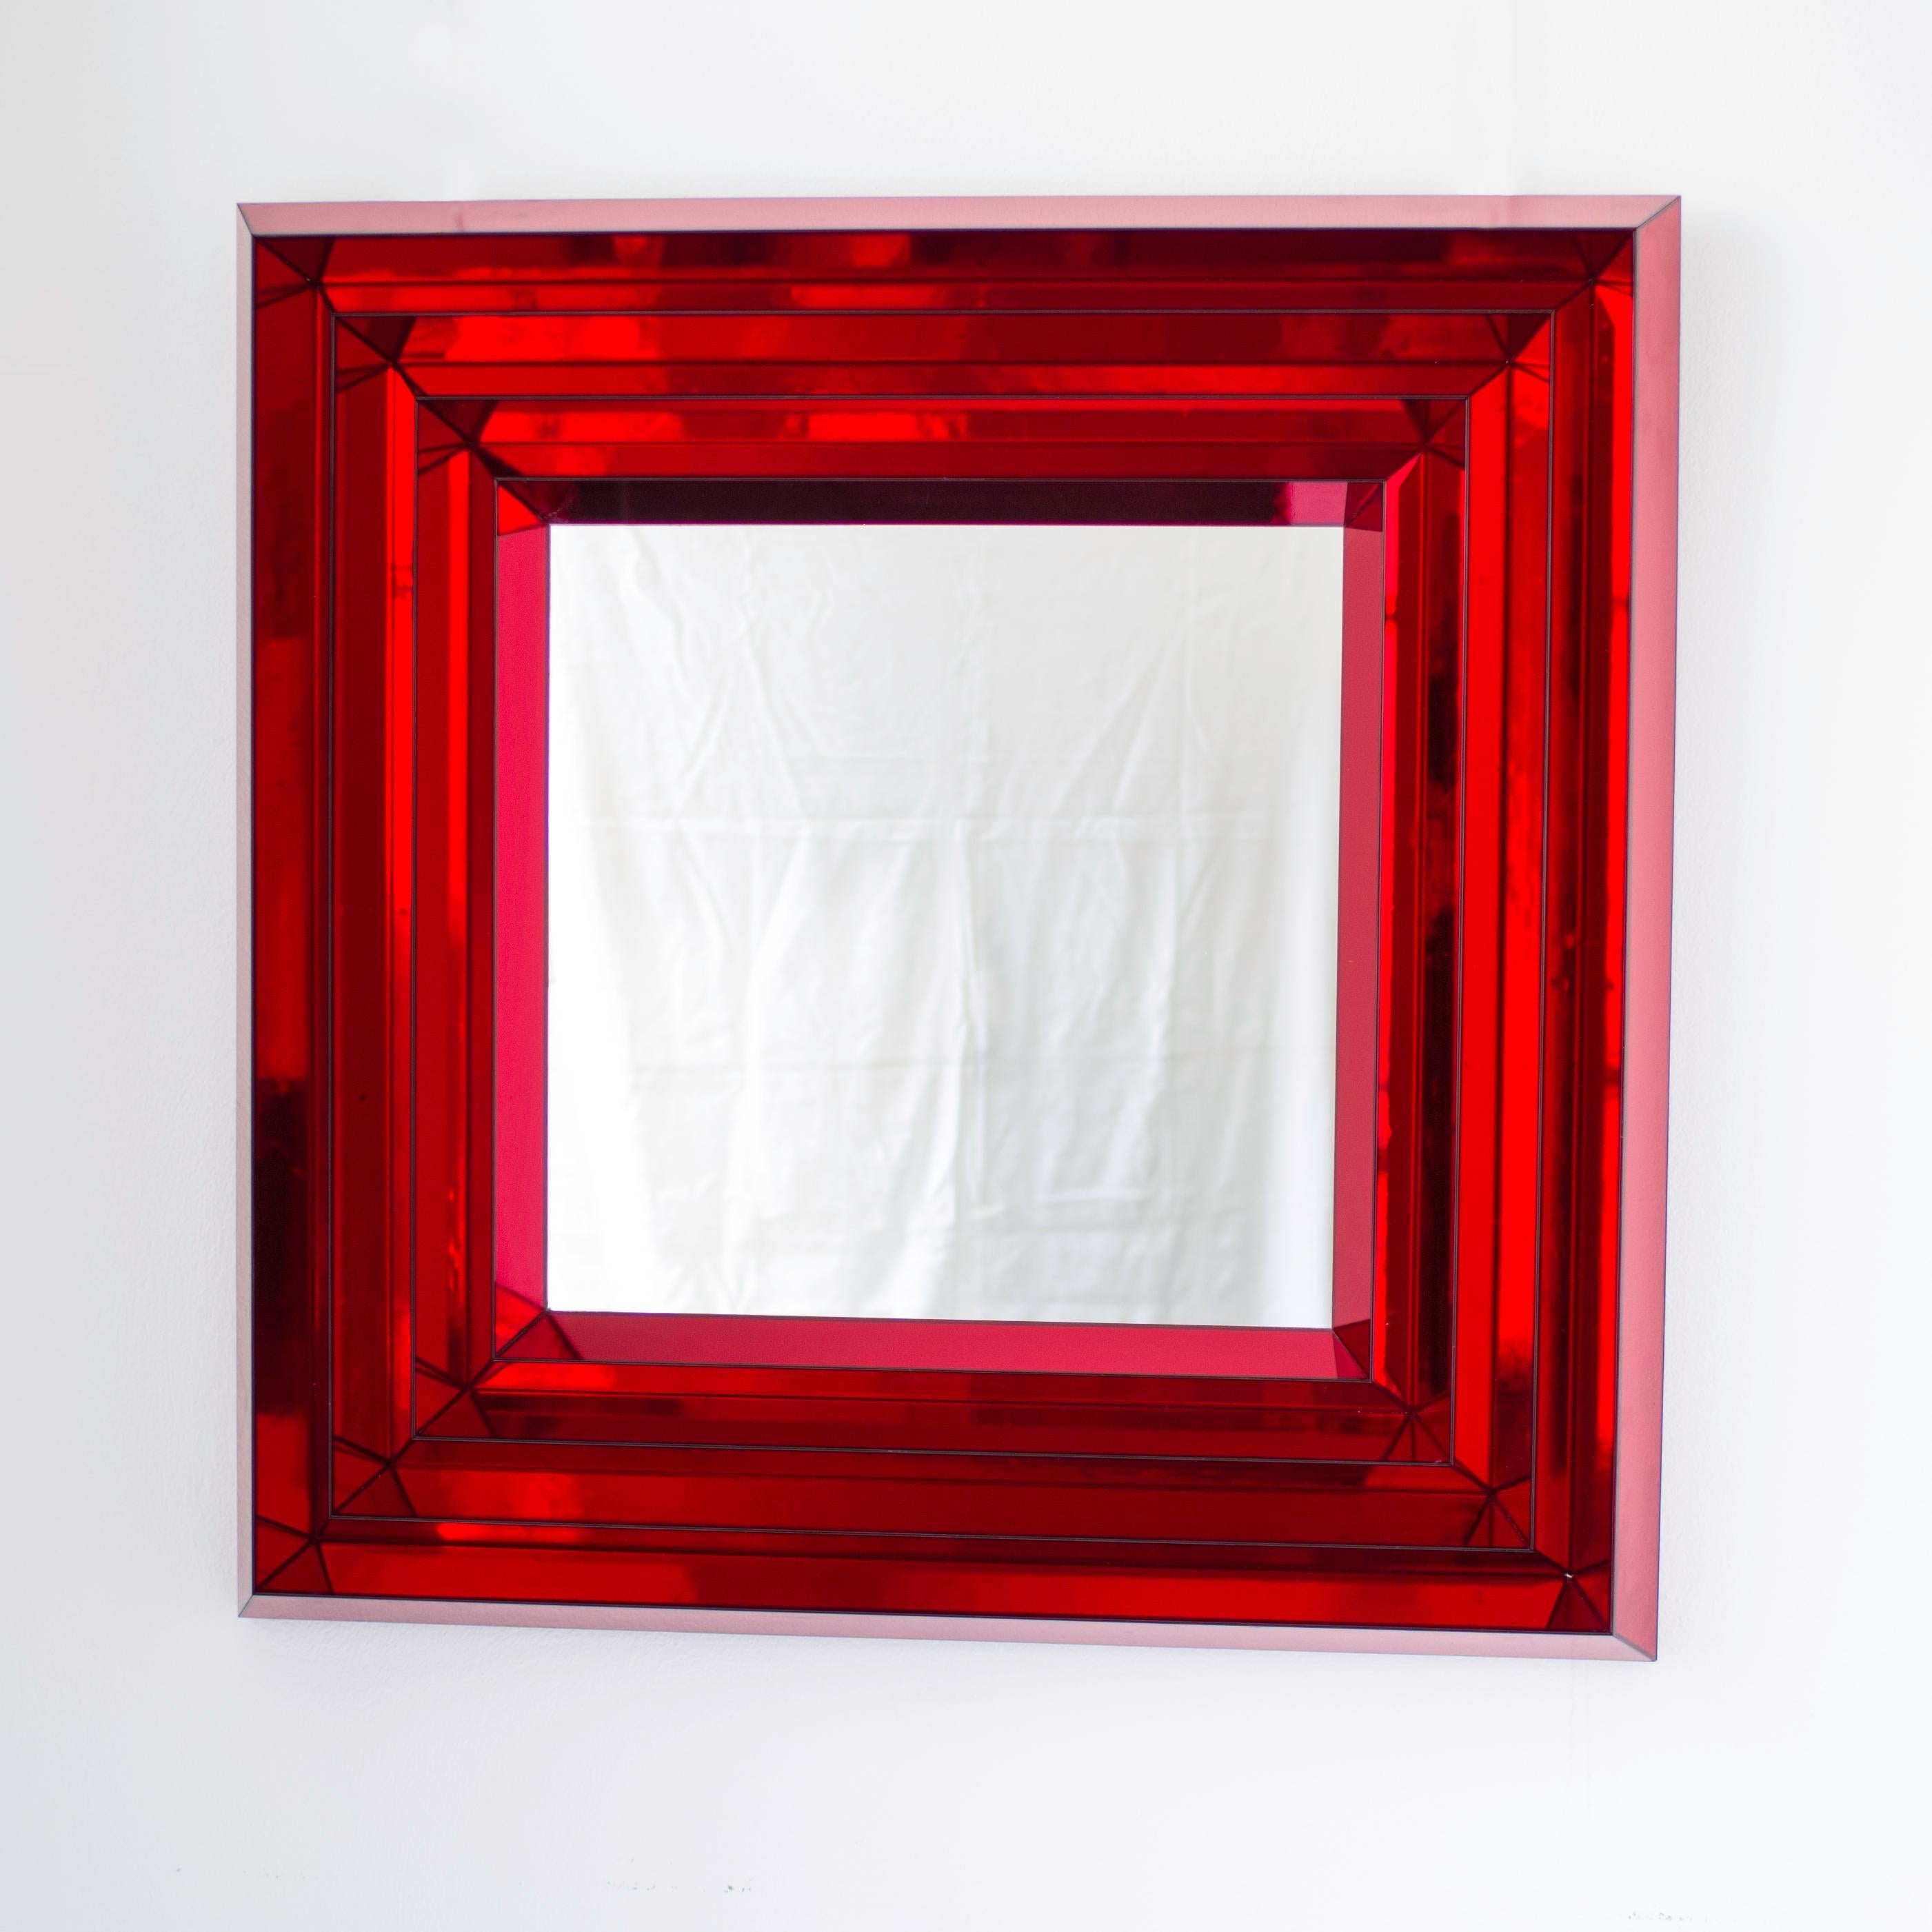 Großer quadratischer Spiegel 'ZIG ZAG RED' mit geprägtem Dekor.
Der Spiegel mit einem Korpus aus Birkenholz wurde von unserem Schreiner aus mehreren Schichten Birkenholz gefertigt, um einen Pyramiden